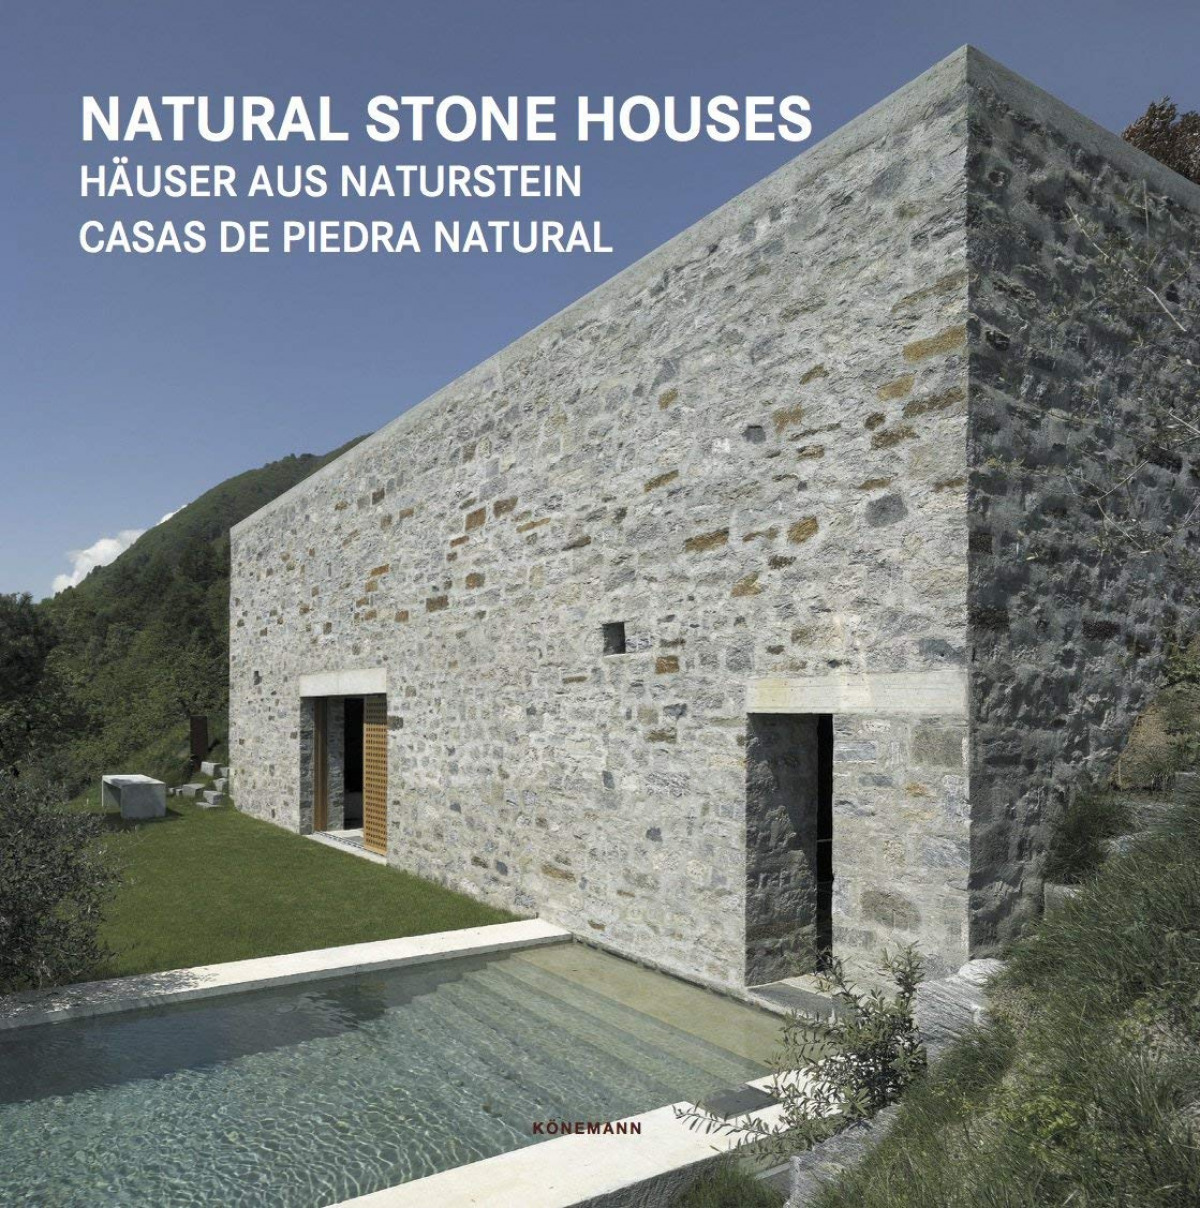 Natural stone houses gb/fr/de/es/it/nl - Vv.Aa.